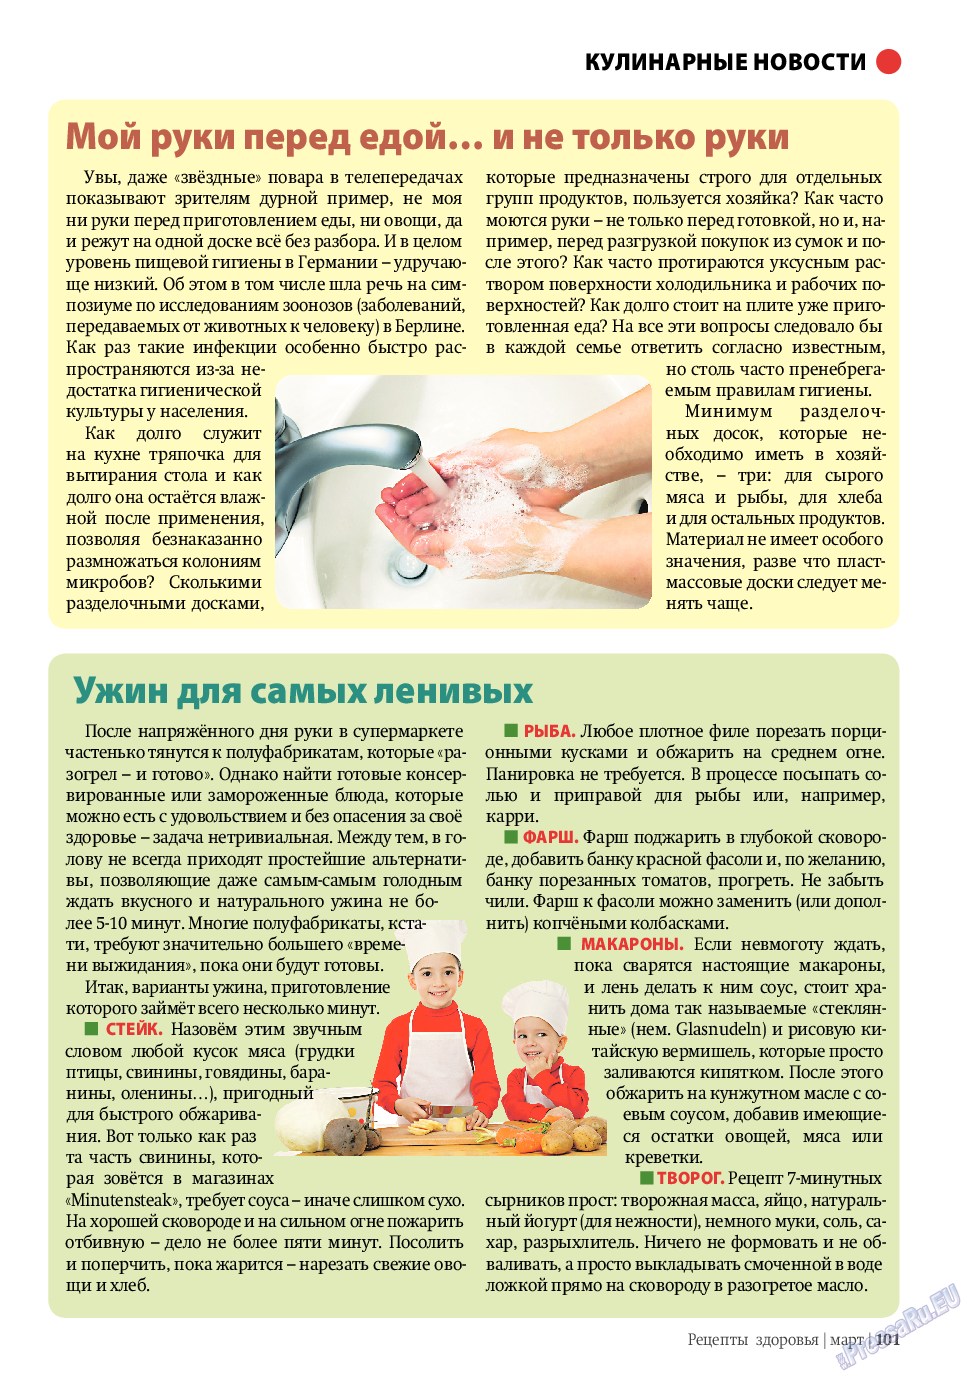 Рецепты здоровья (журнал). 2011 год, номер 3, стр. 101